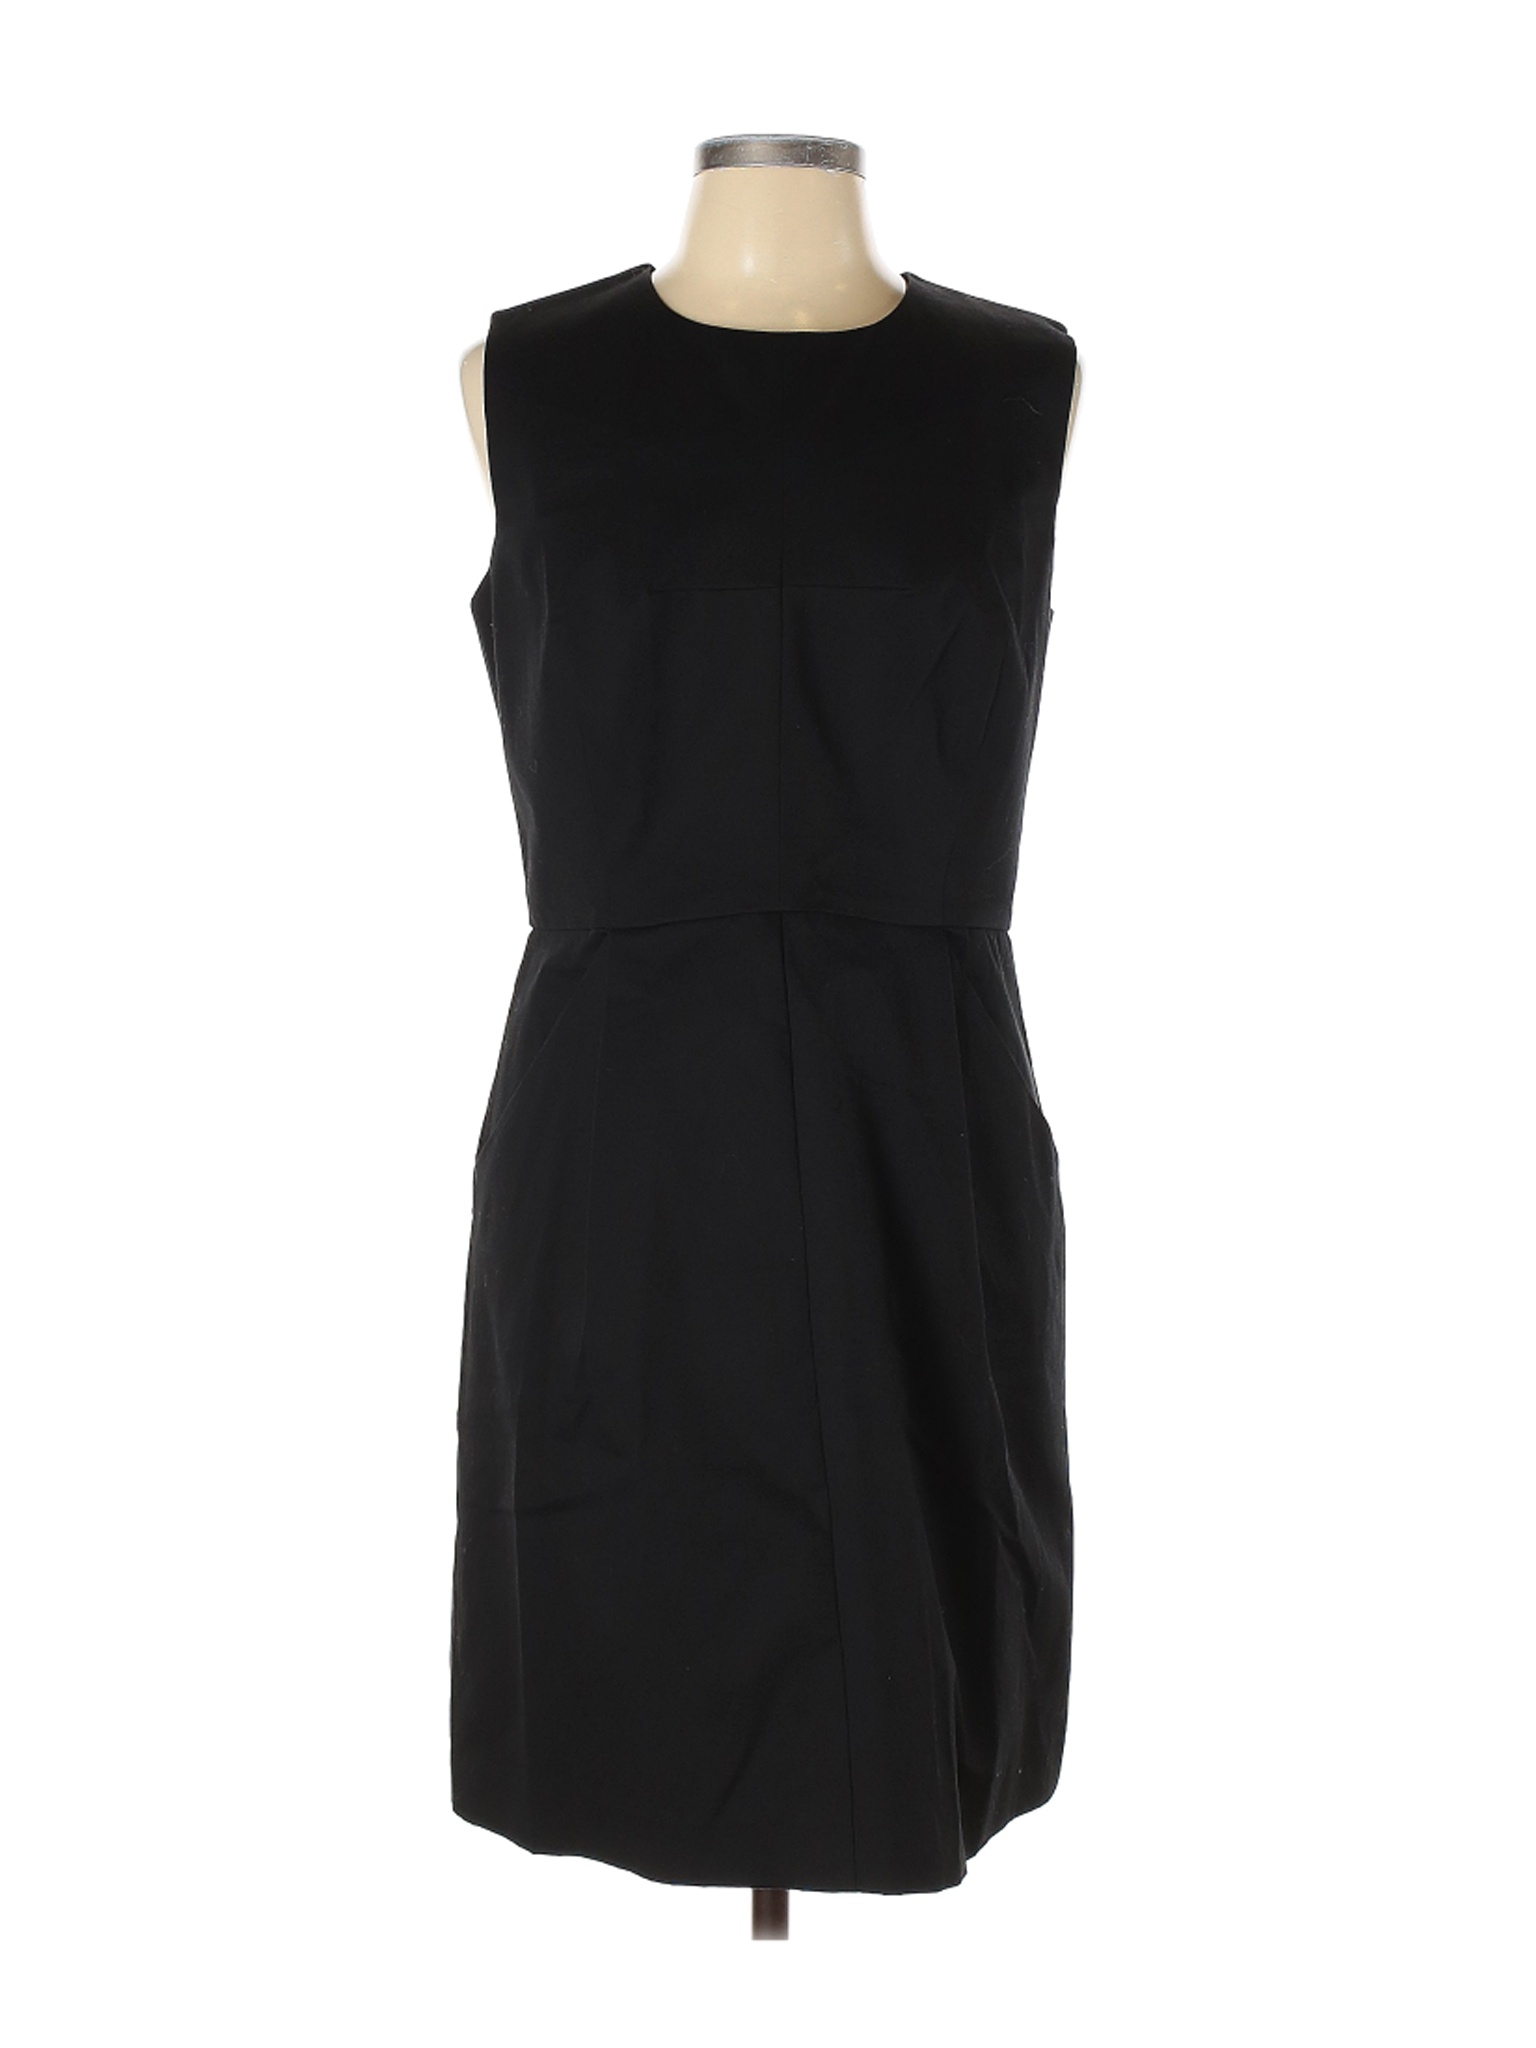 NWT Milly Women Black Cocktail Dress 12 | eBay